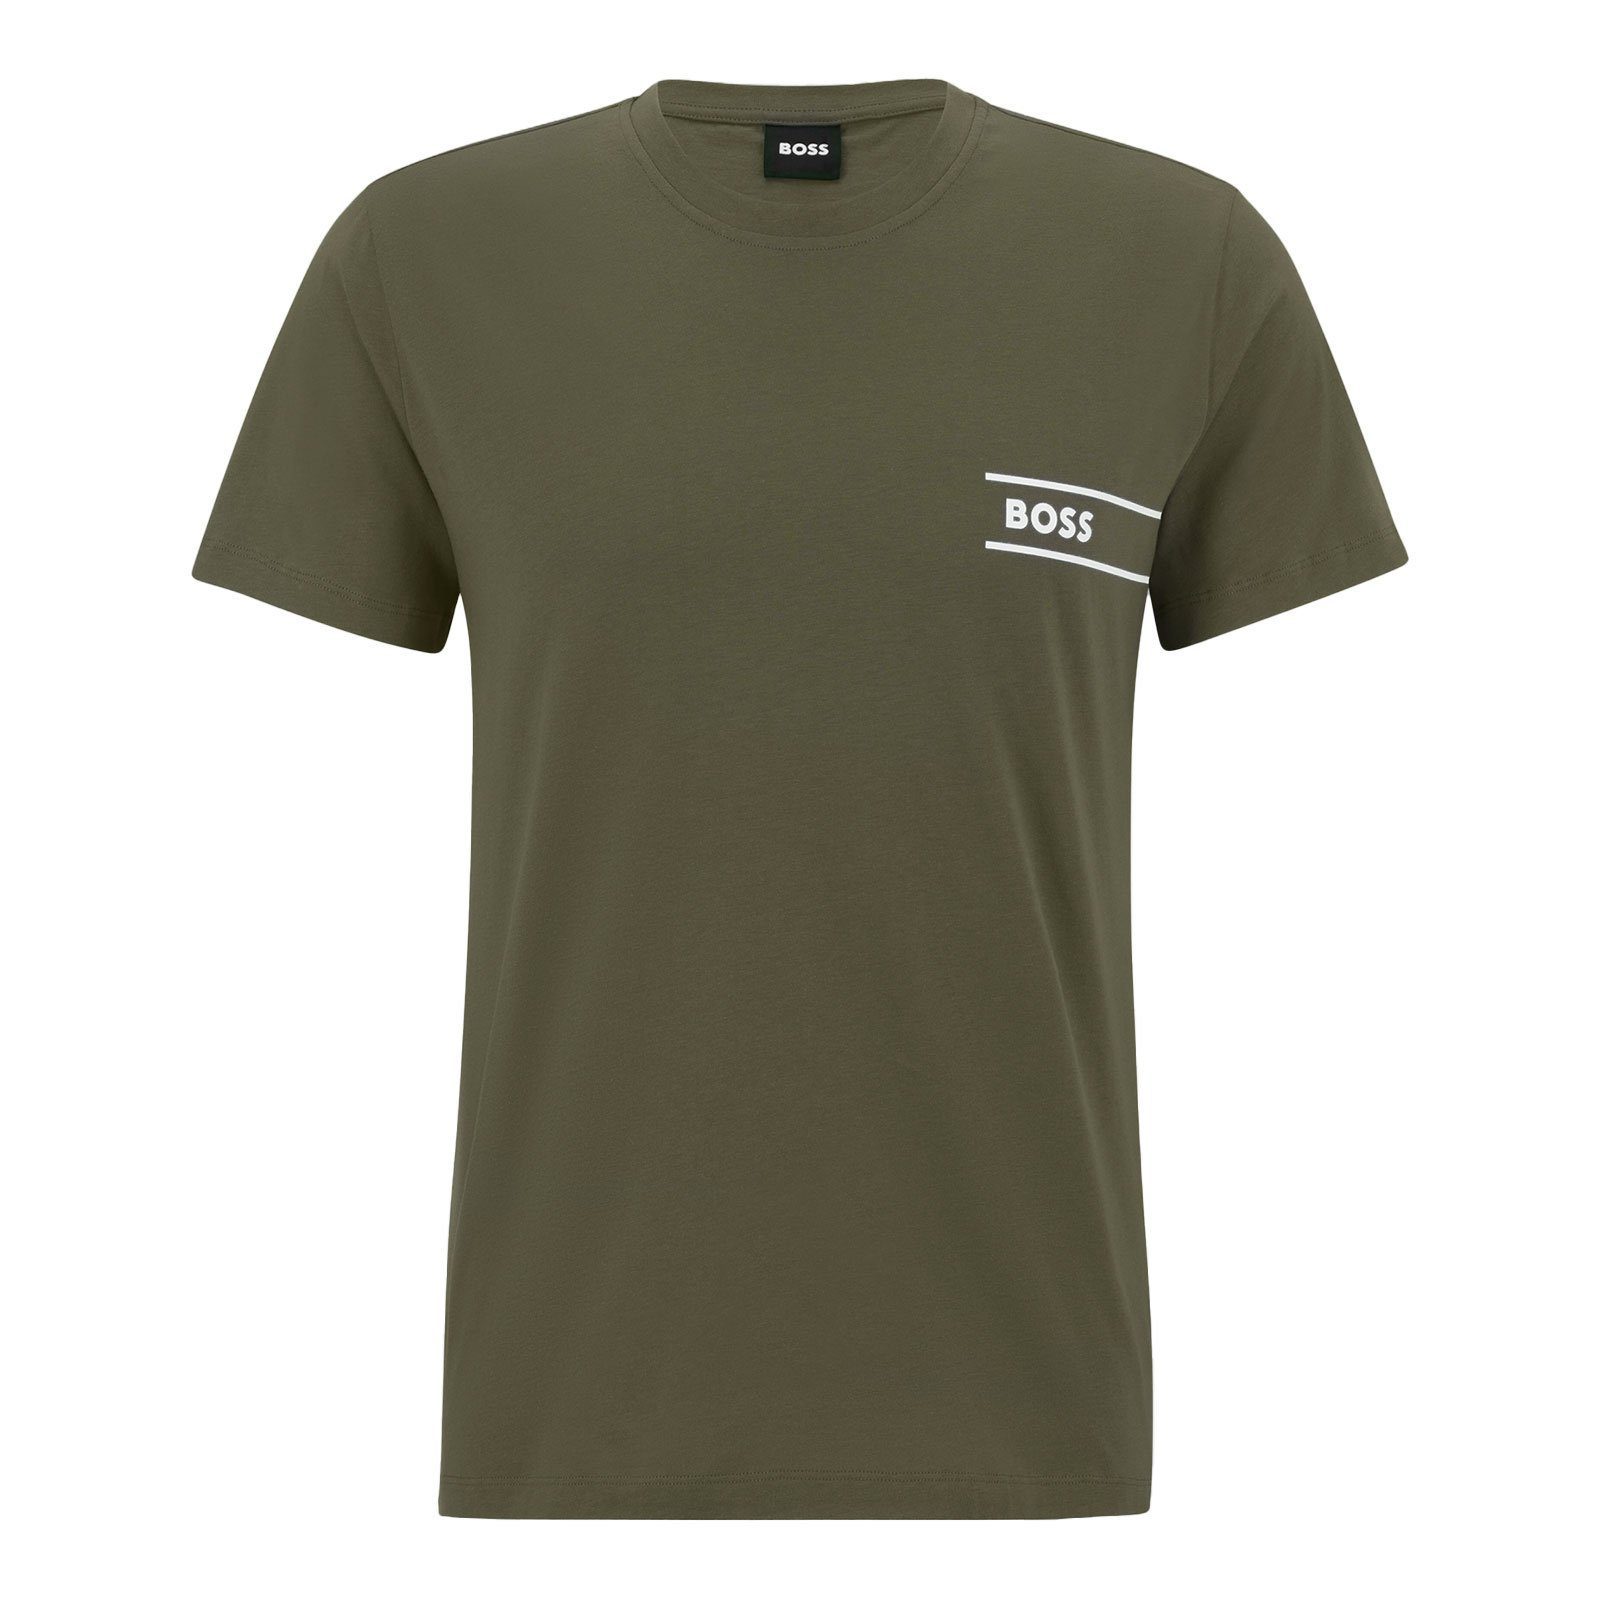 T-Shirt 24 RN BOSS olive T-Shirt 361 Markenprint mit